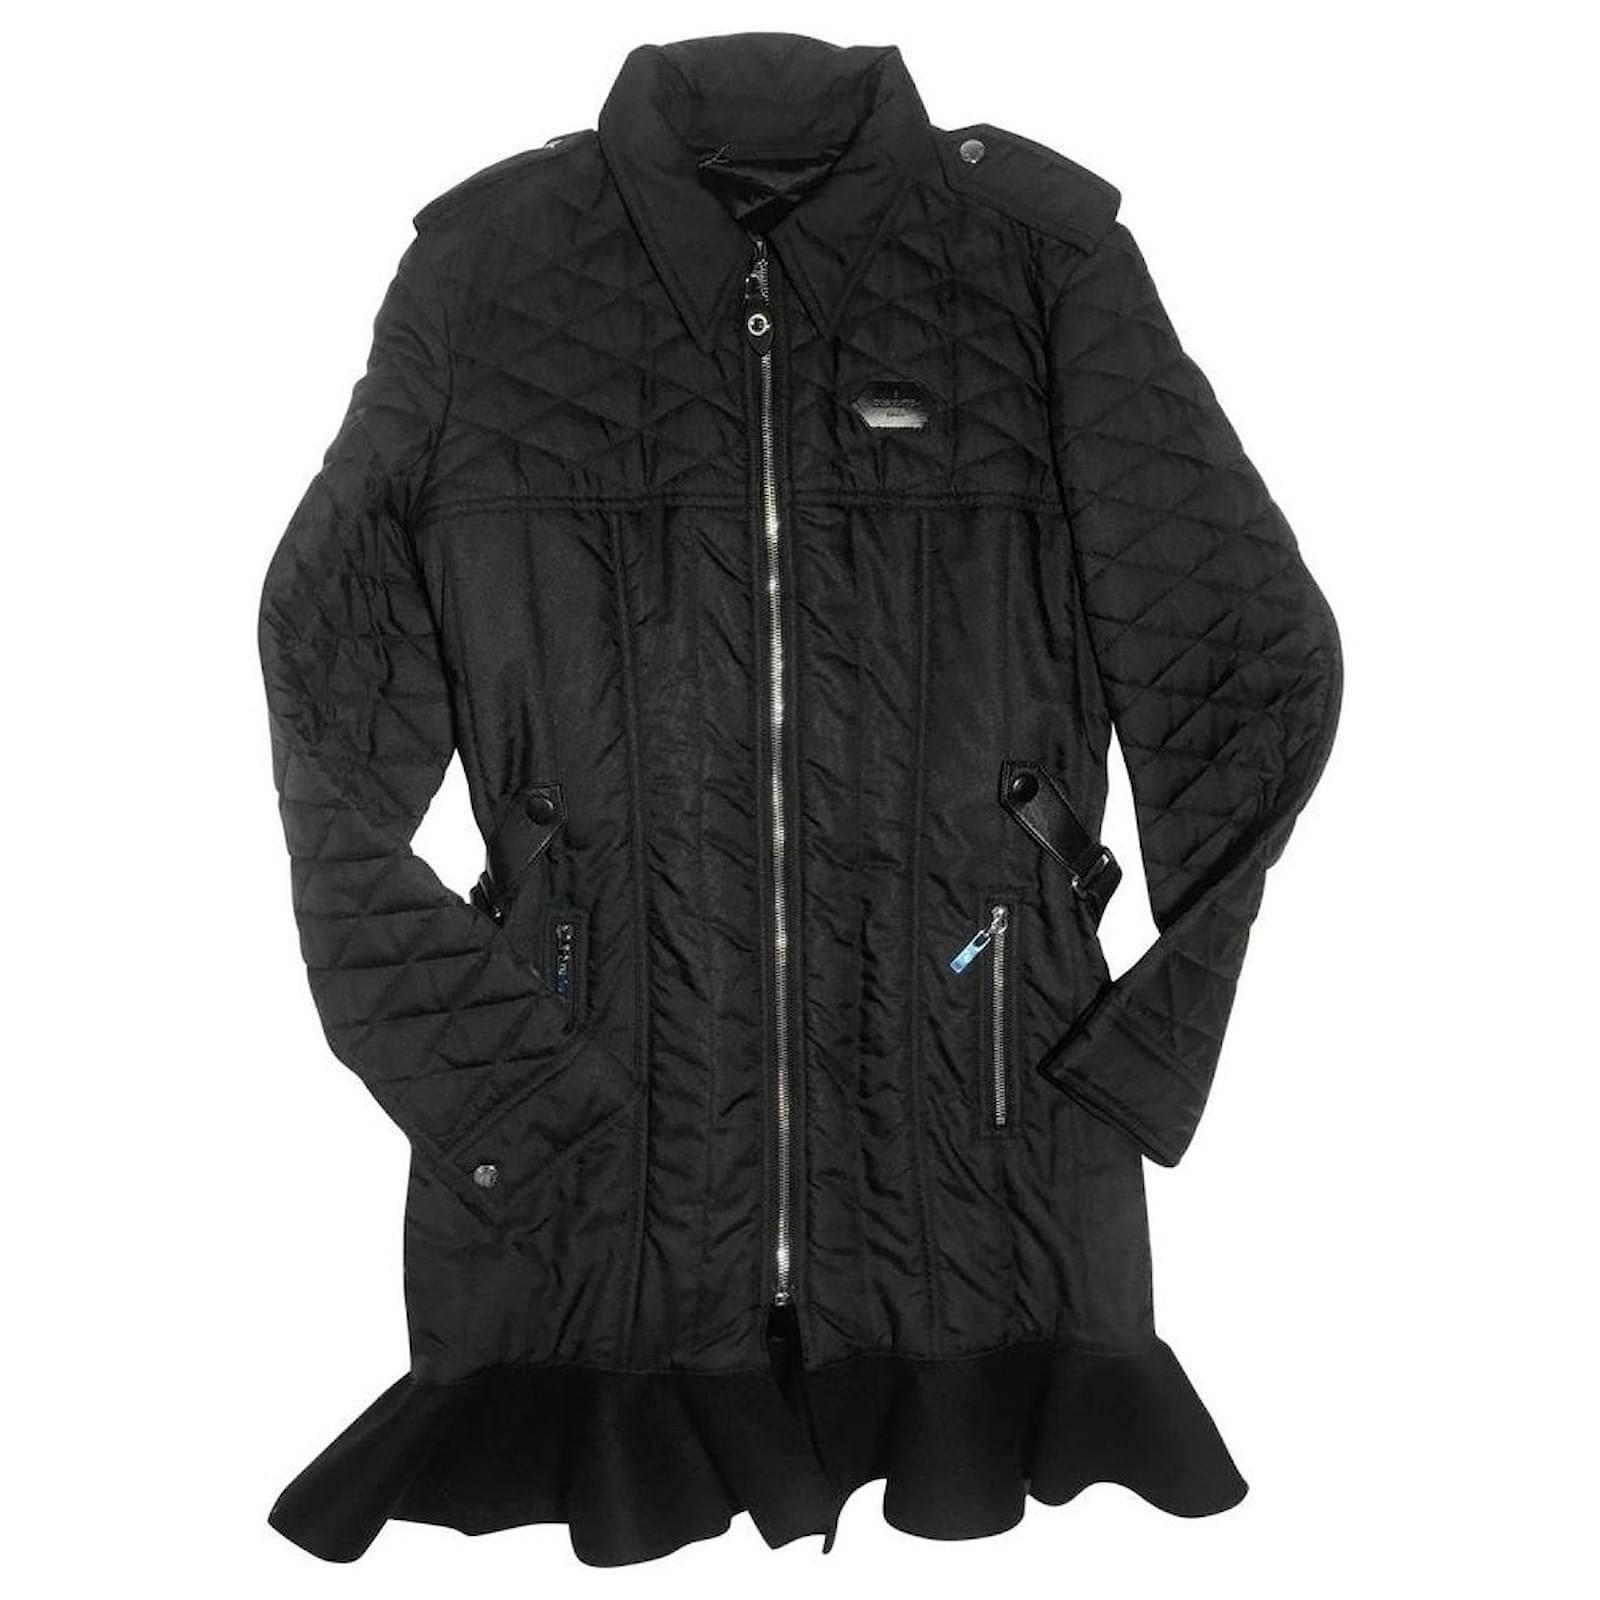 LOUIS VUITTON Damen Jacke/Mantel aus Wolle in Schwarz